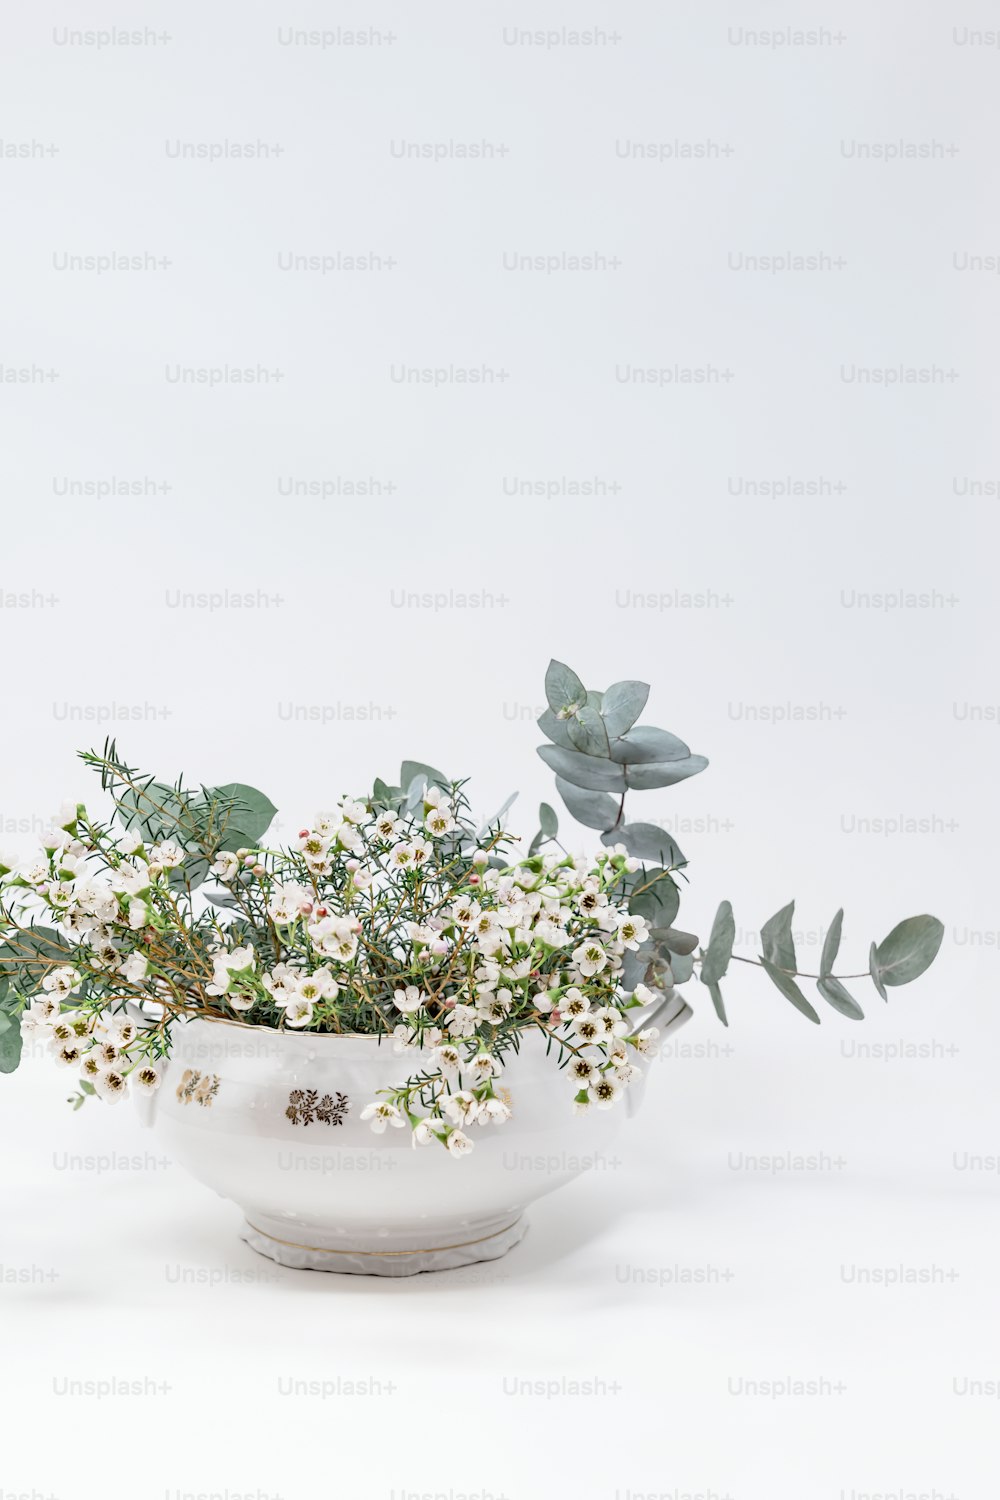 Un cuenco blanco lleno de flores y vegetación